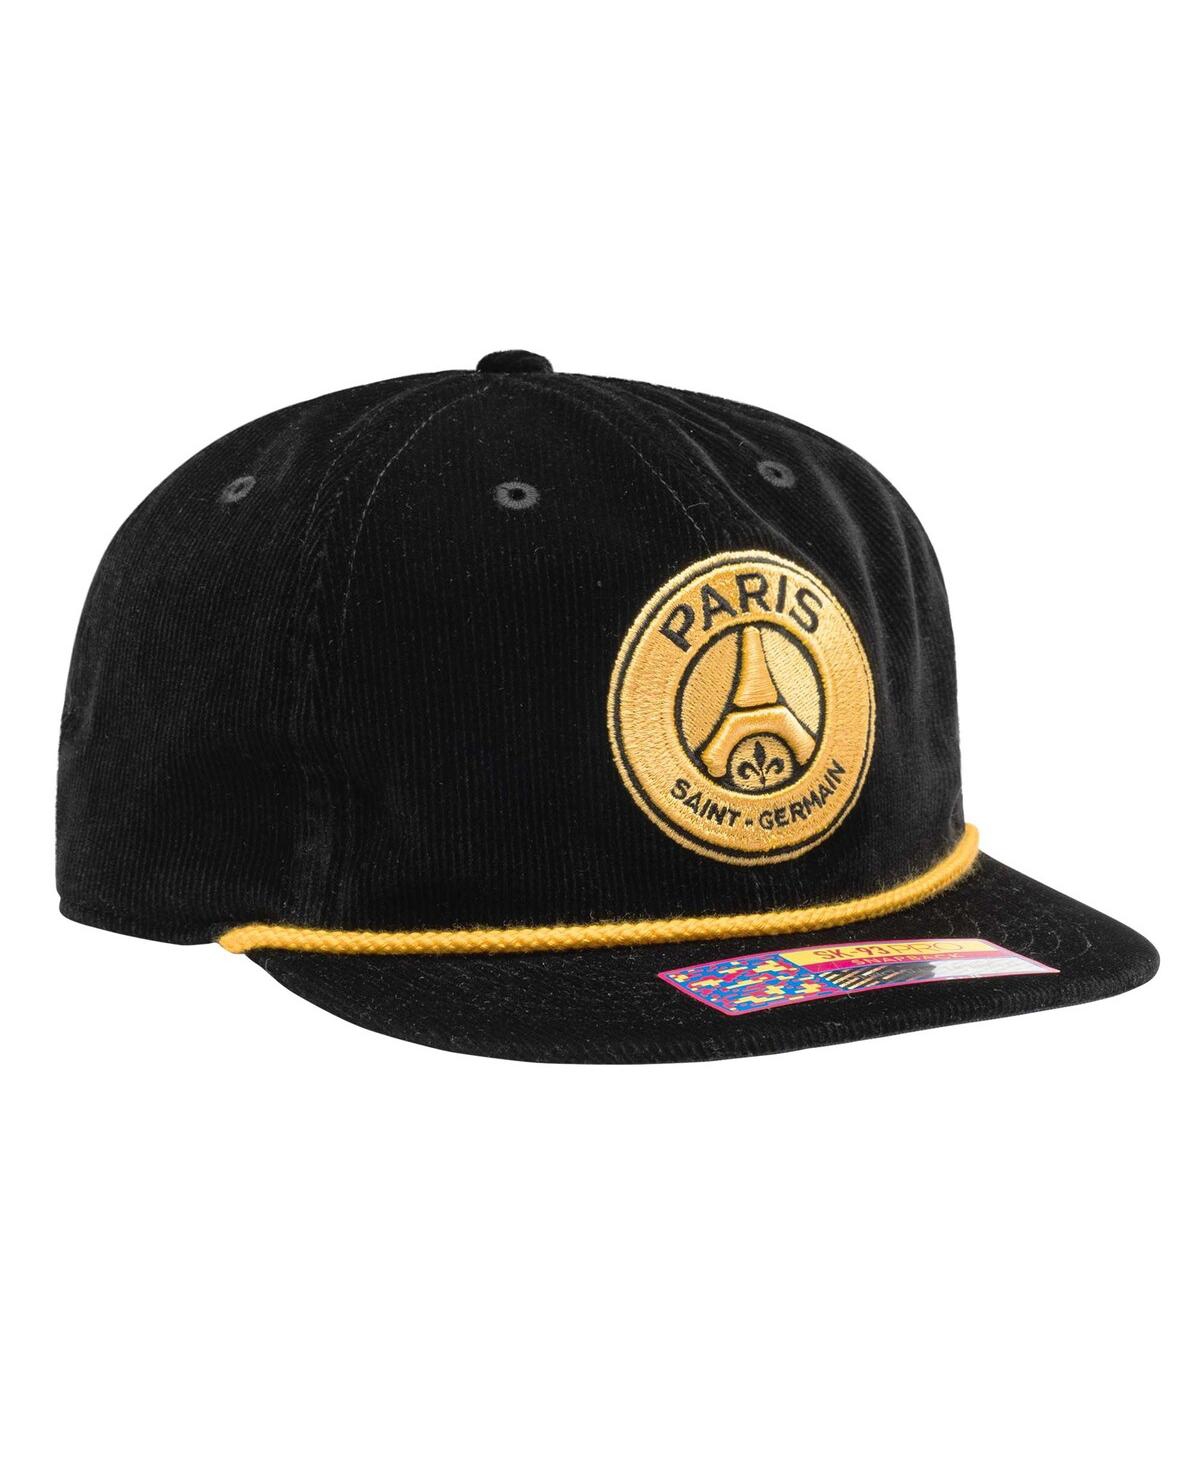 Shop Fan Ink Men's Black Paris Saint-germain Snow Beach Adjustable Hat